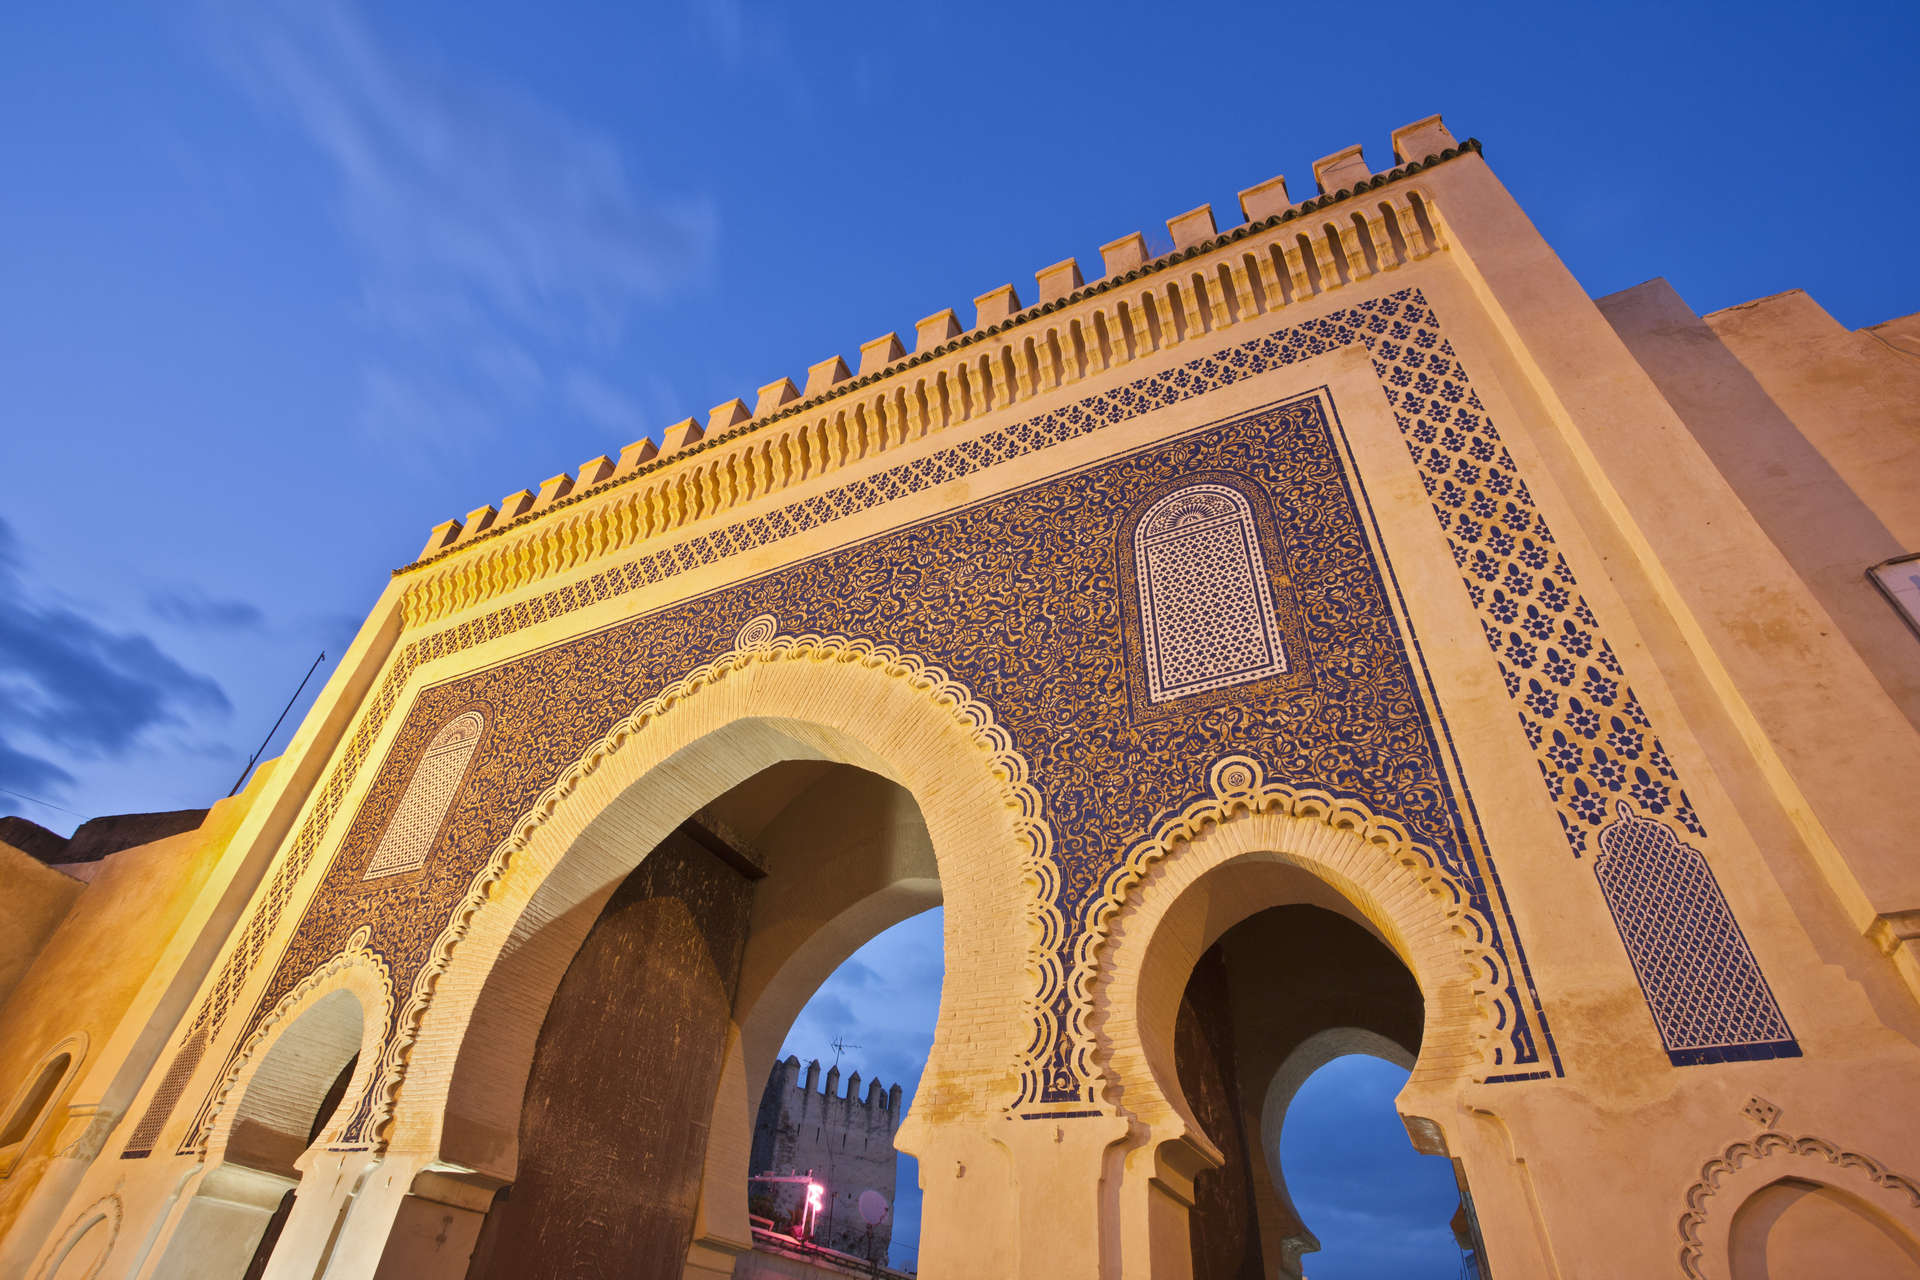 Fez, czyli cesarskie miasto w Maroku, którego korzenie sięgają Średniowiecza